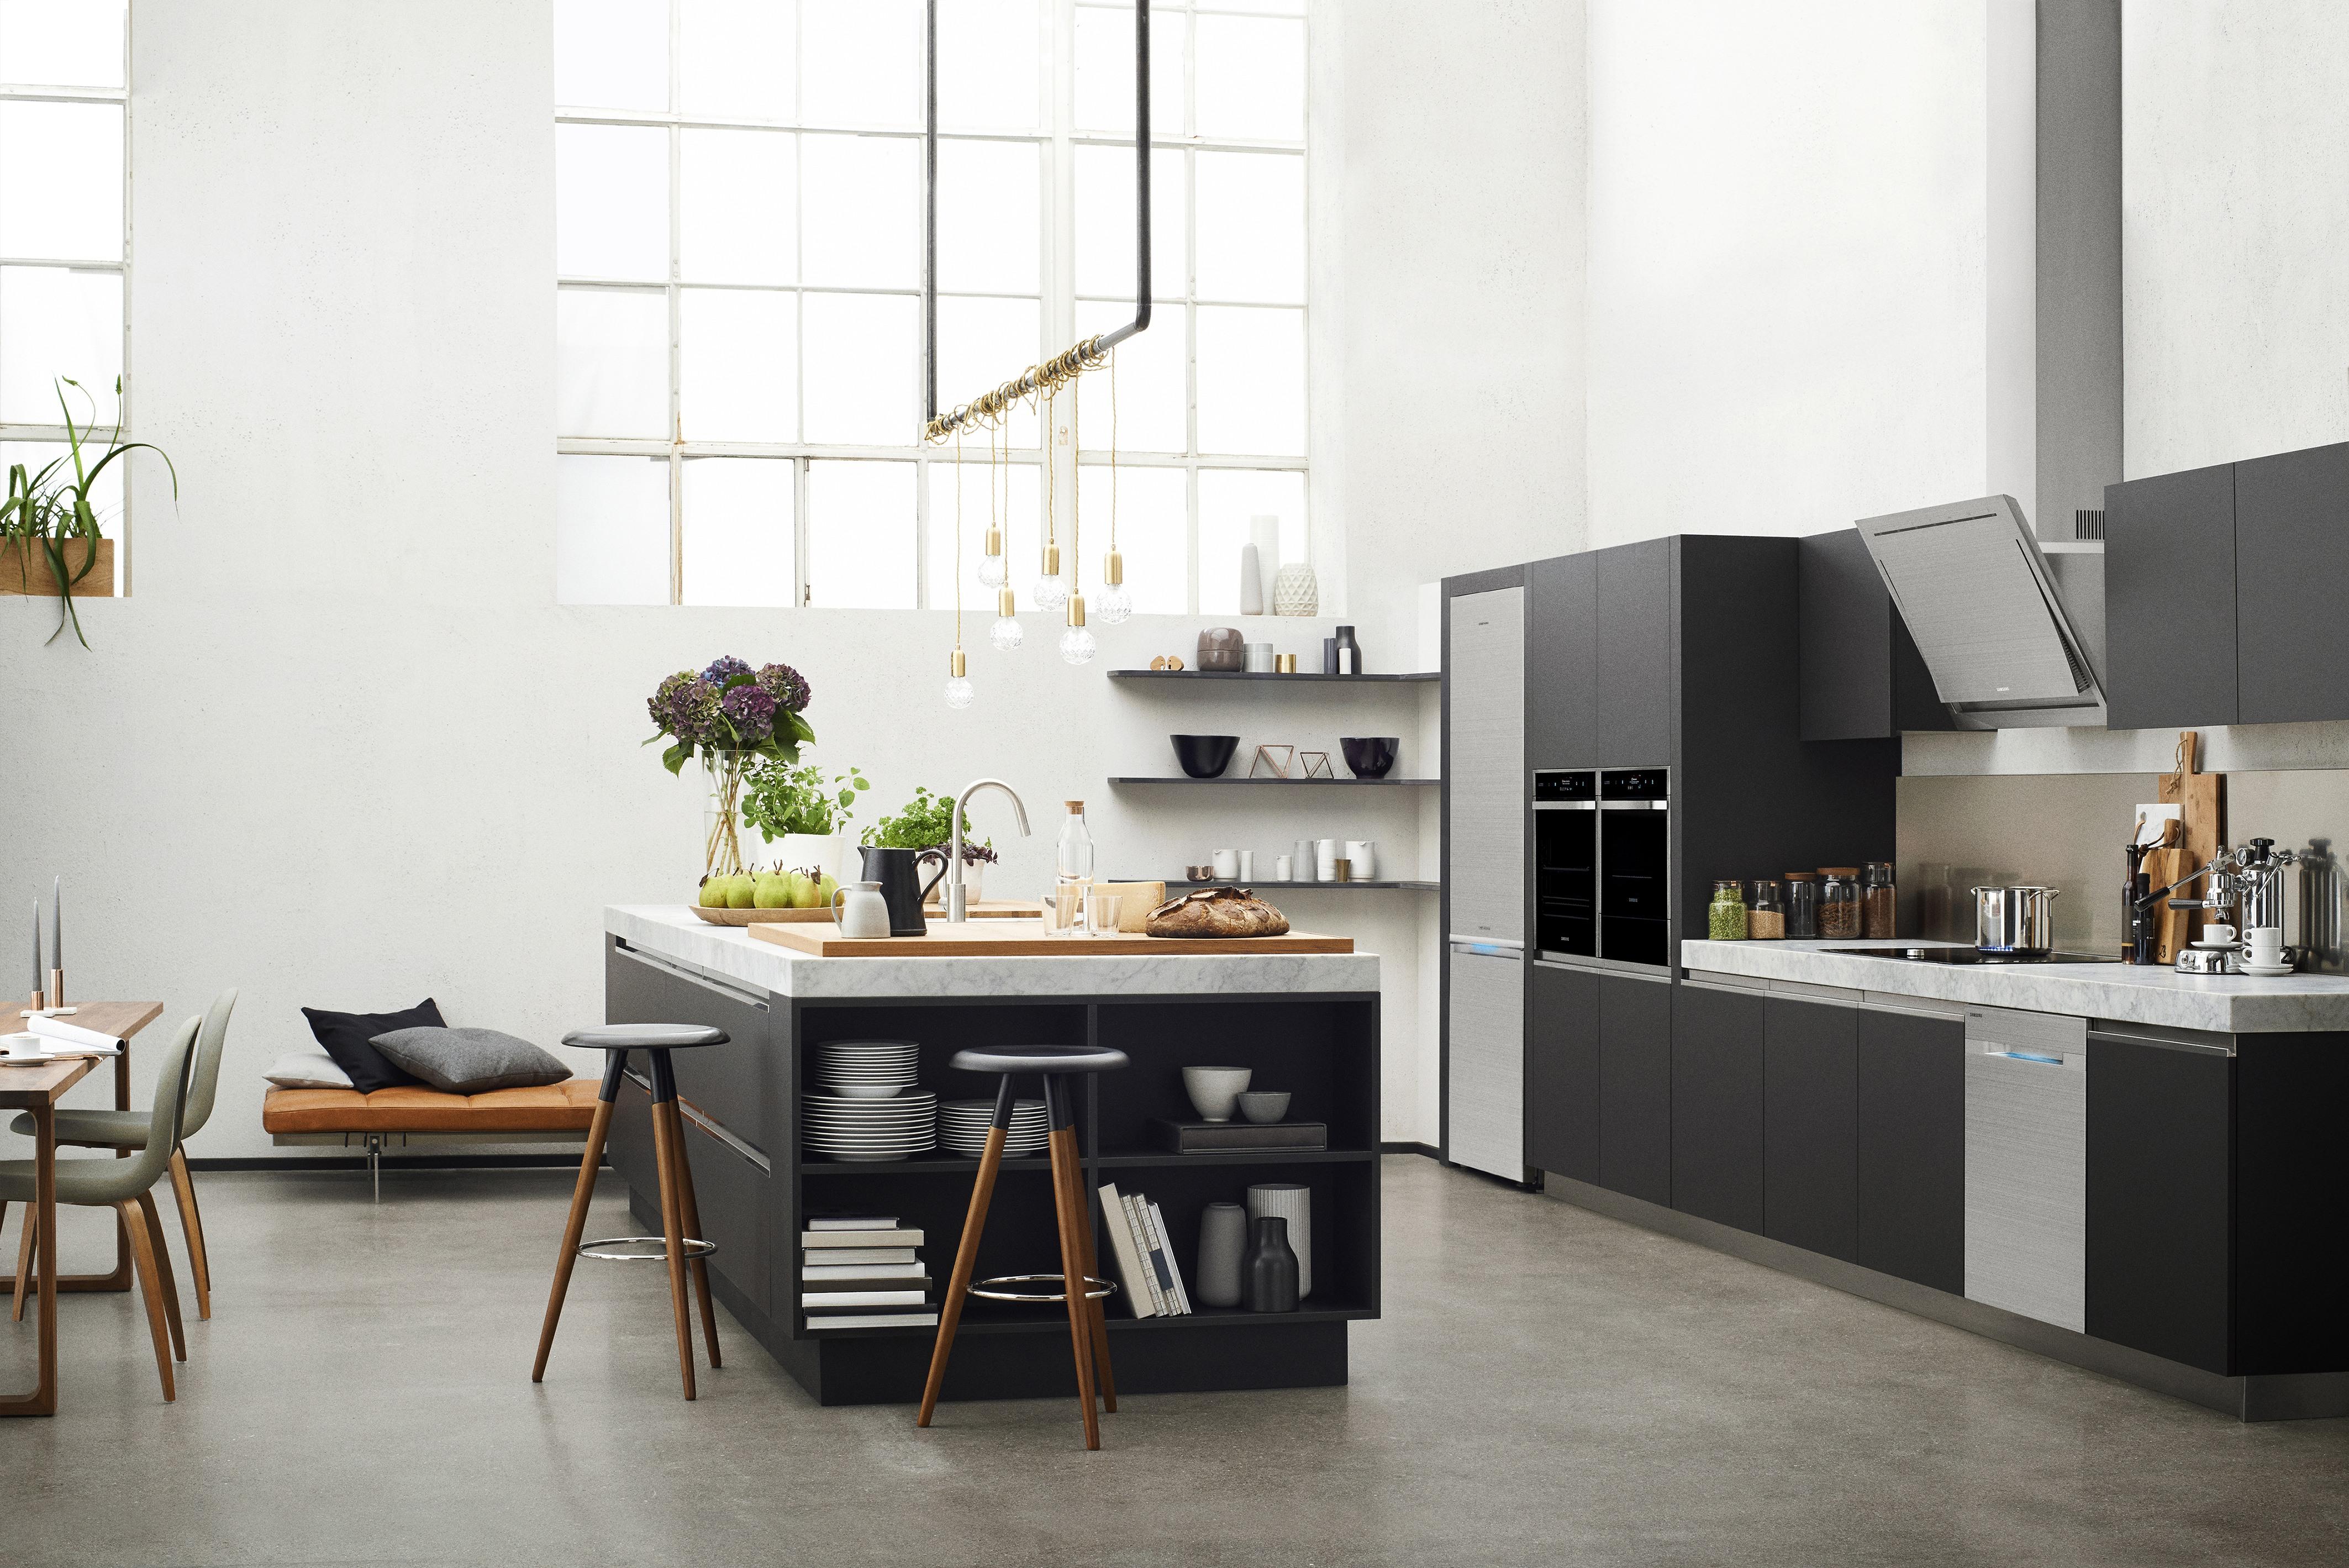 Küchenensemble von Samsung #küche #küchenblock #küchenmöbel #smarthome #zimmergestaltung ©Samsung